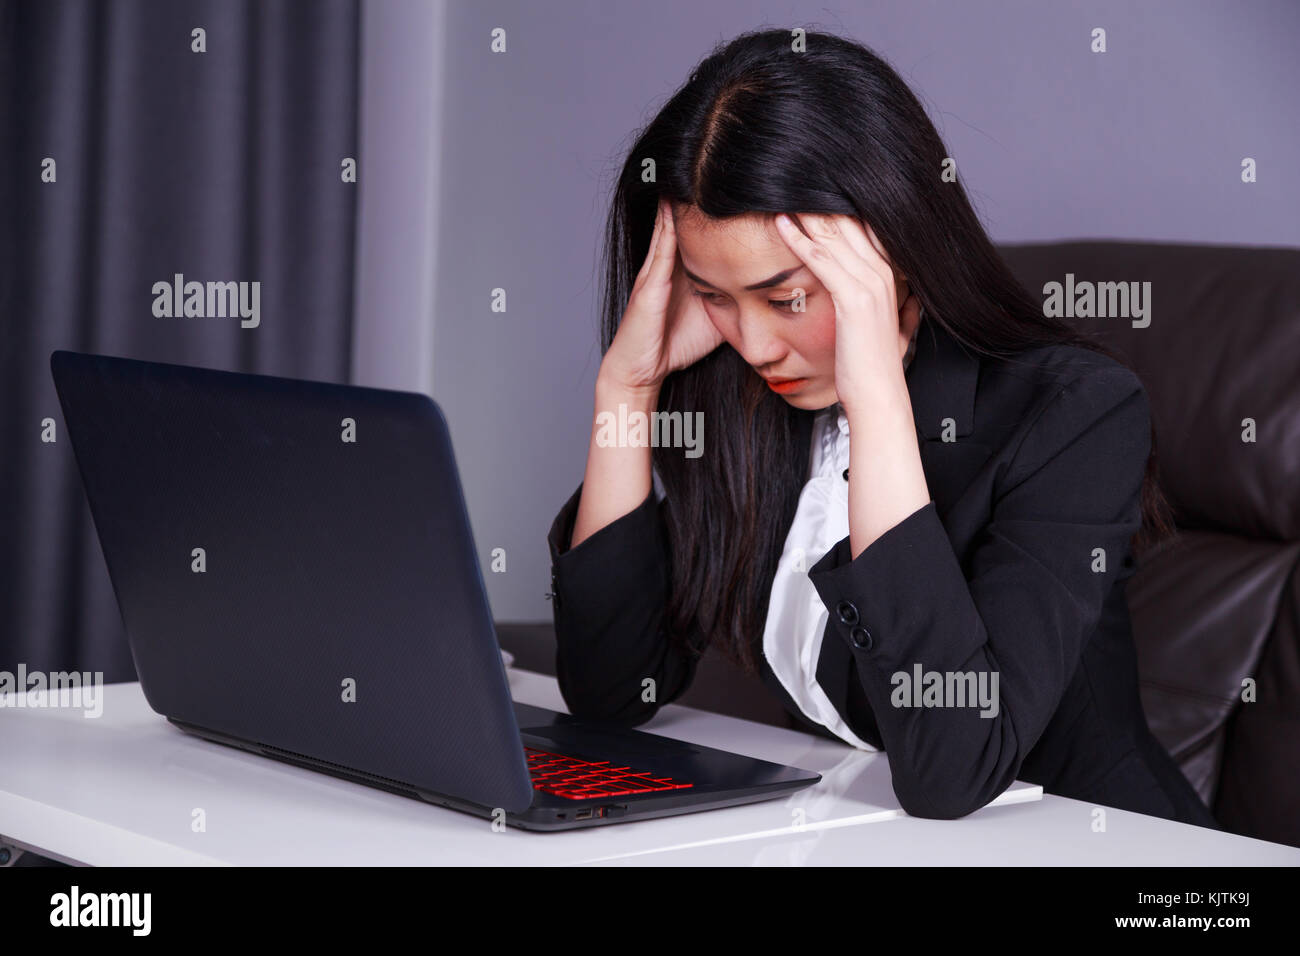 Junge Frau im Anzug arbeiten mit Laptop im Stress verzweifelt Stockfoto